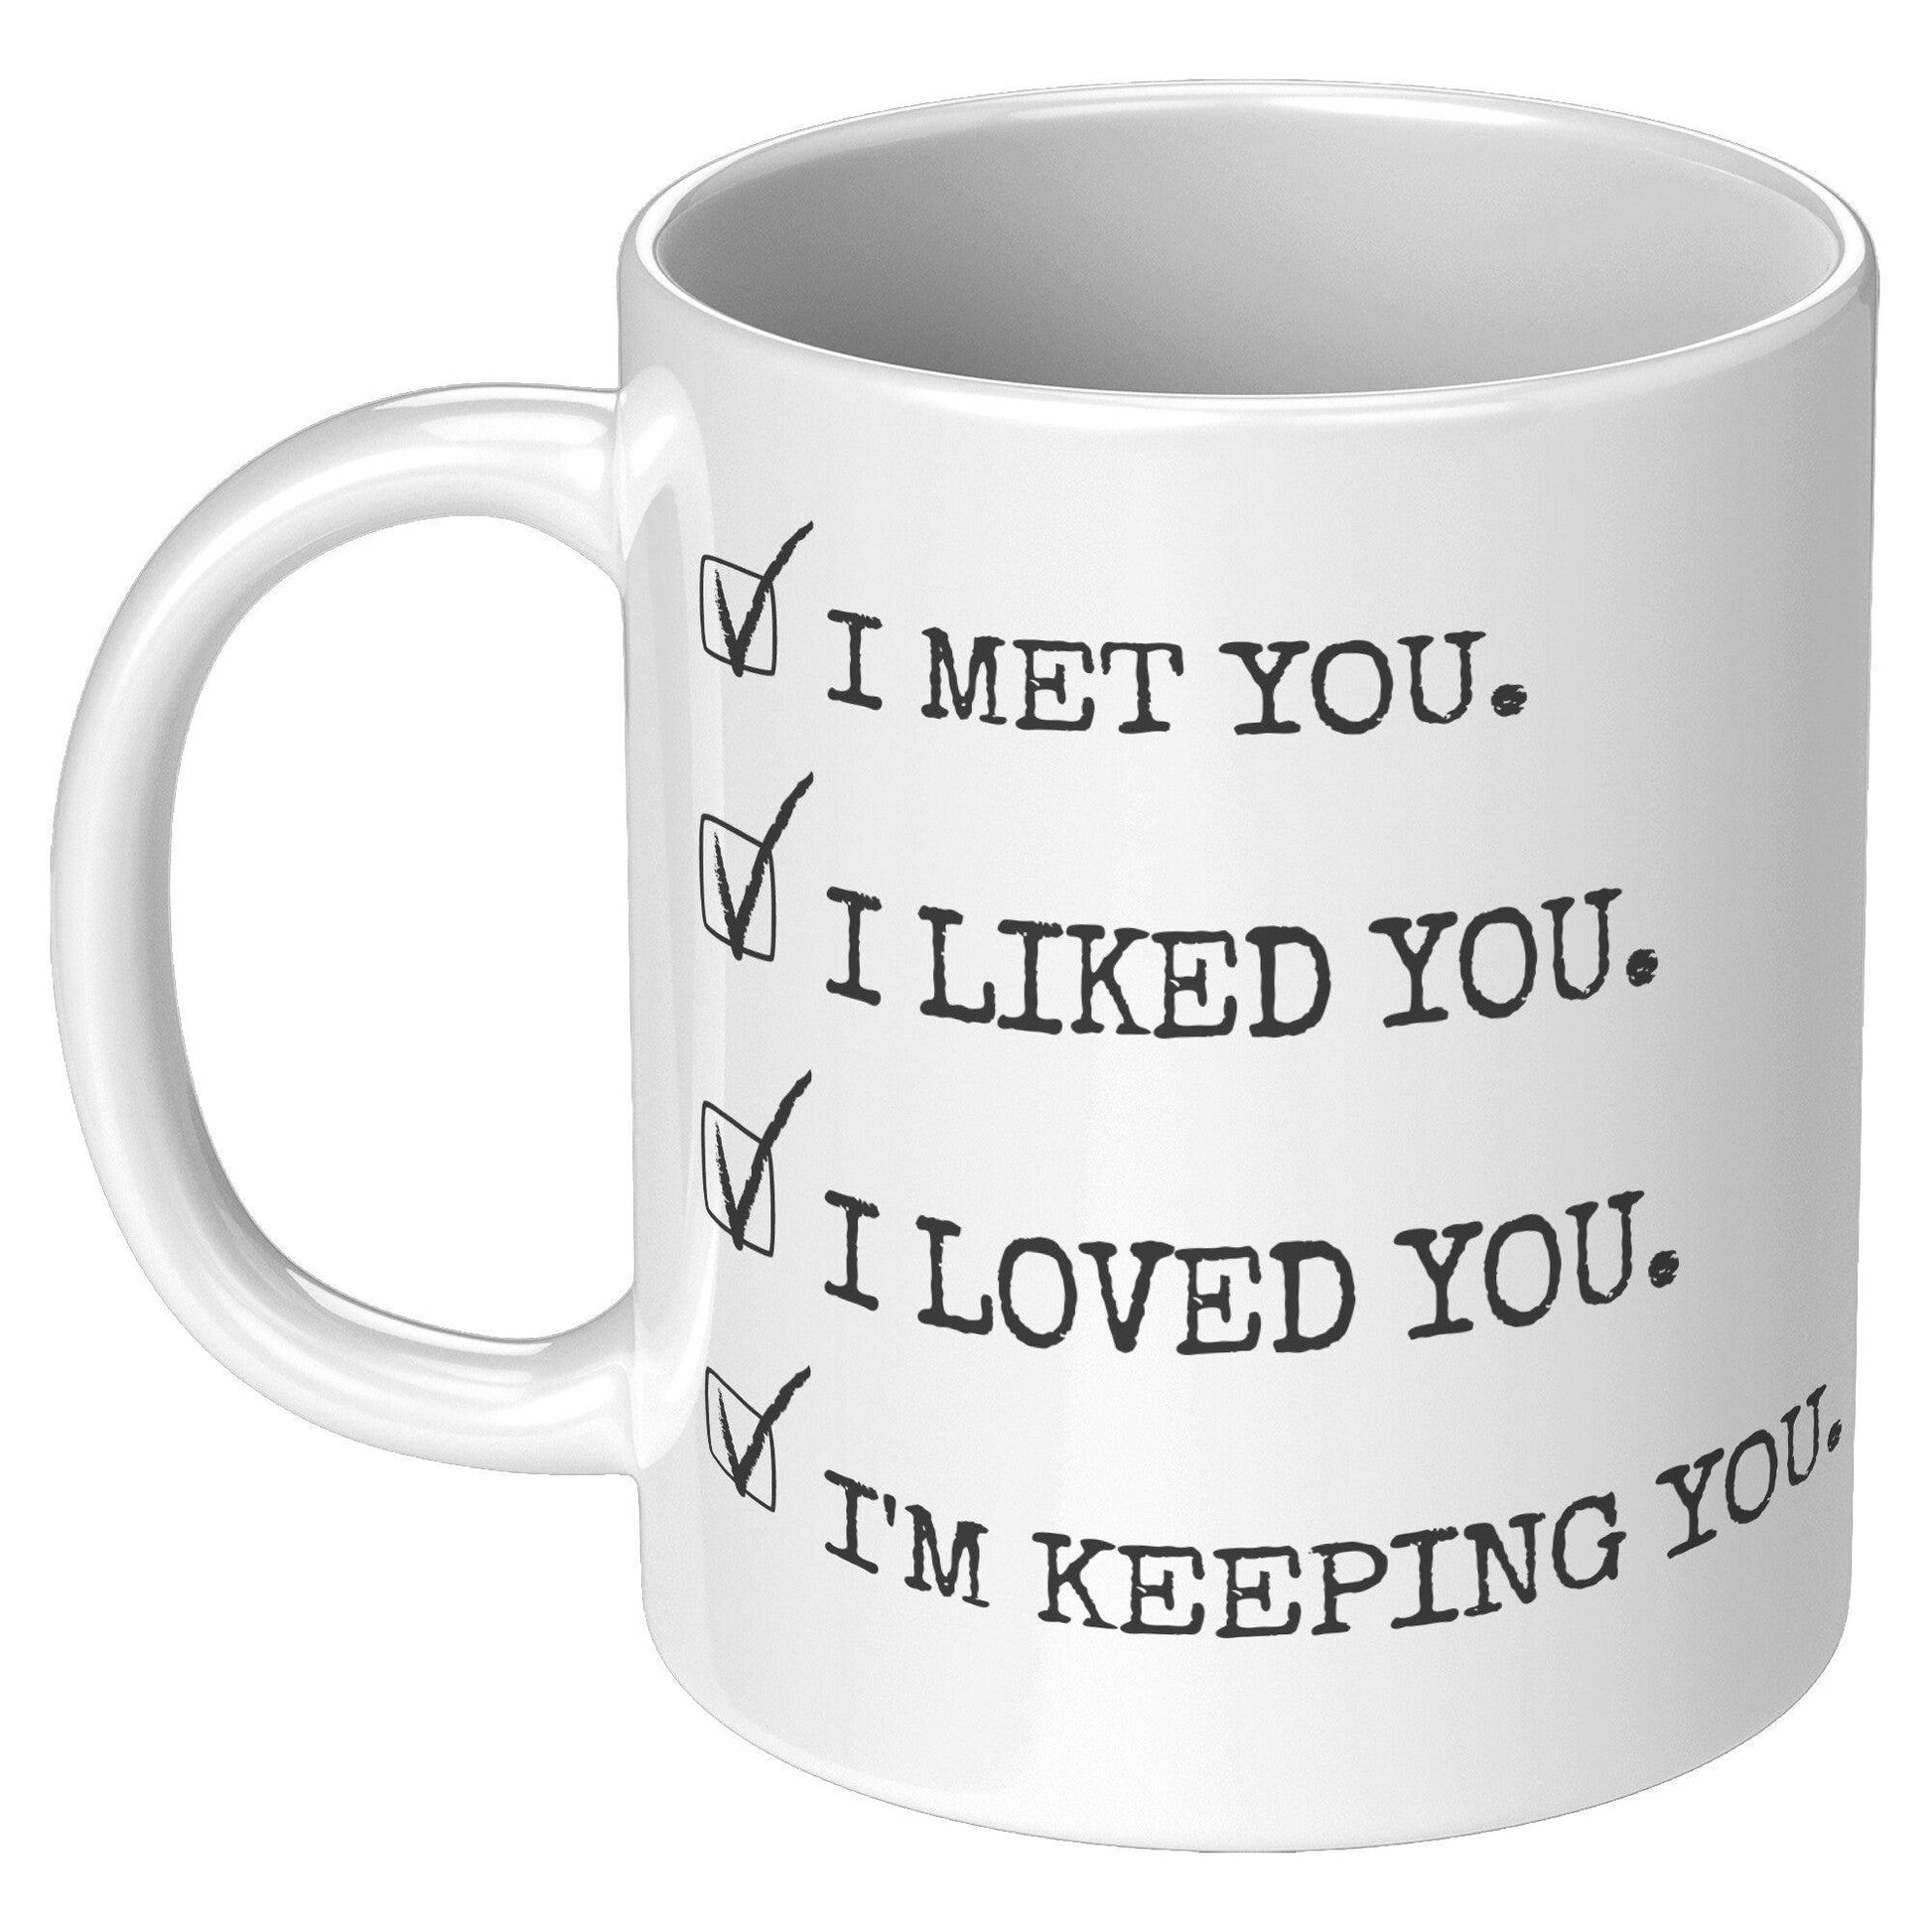 I Met You. I Liked You. I Loved You. I'm Keeping You. White Mug - TheGivenGet